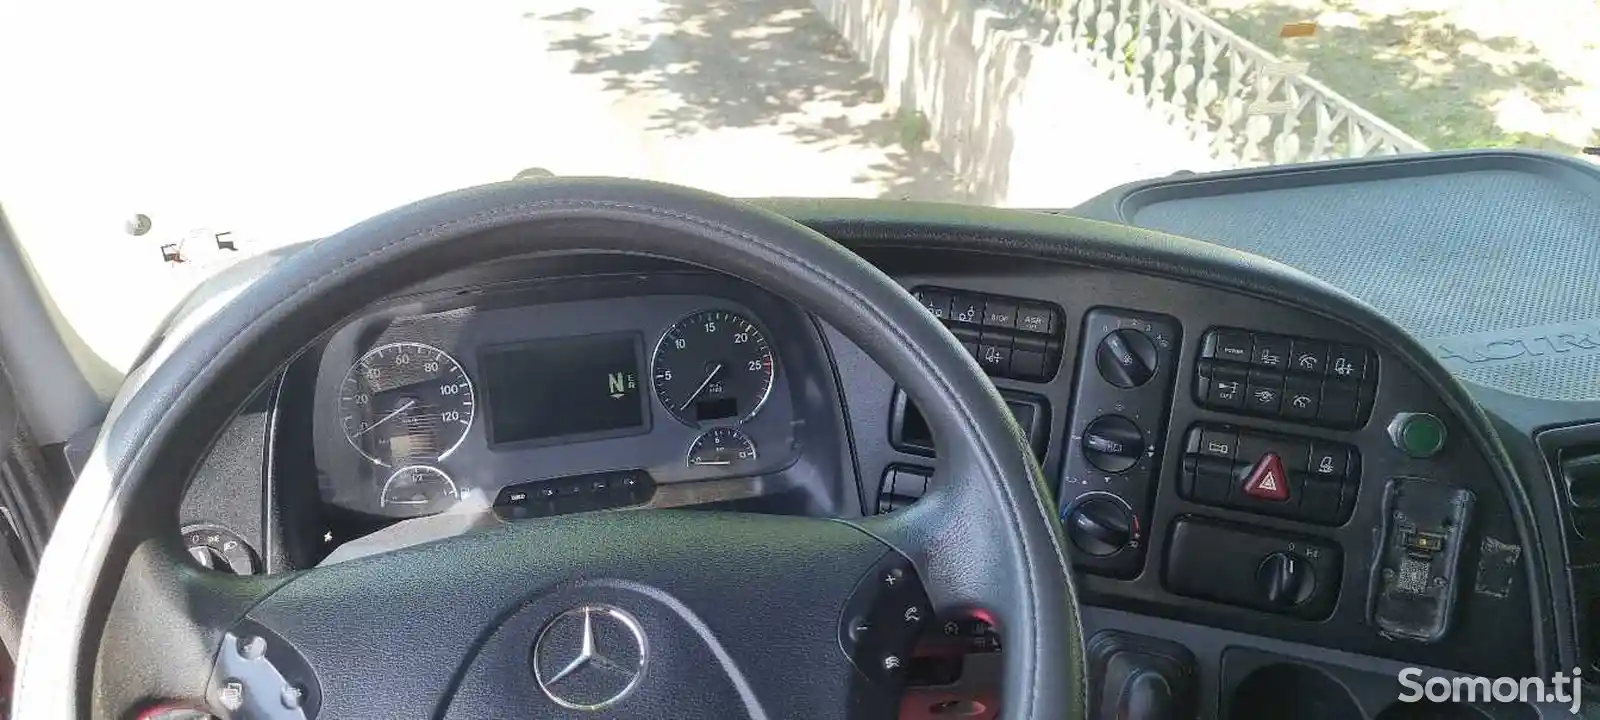 Бортовой грузовик Mercedes-Benz Actros, 2012-6